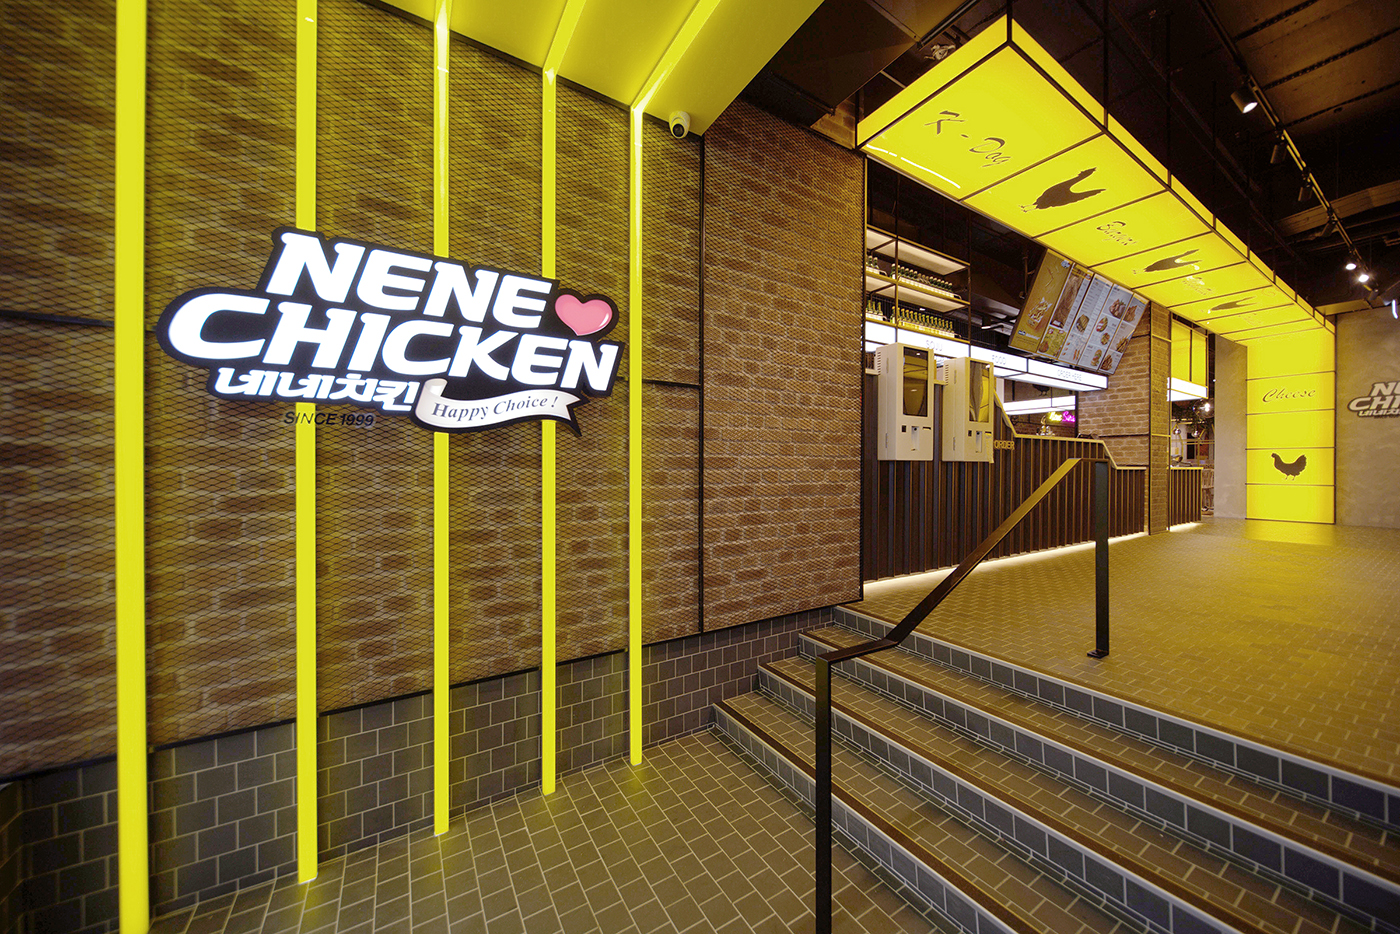 Nene Chicken restaurant fitout